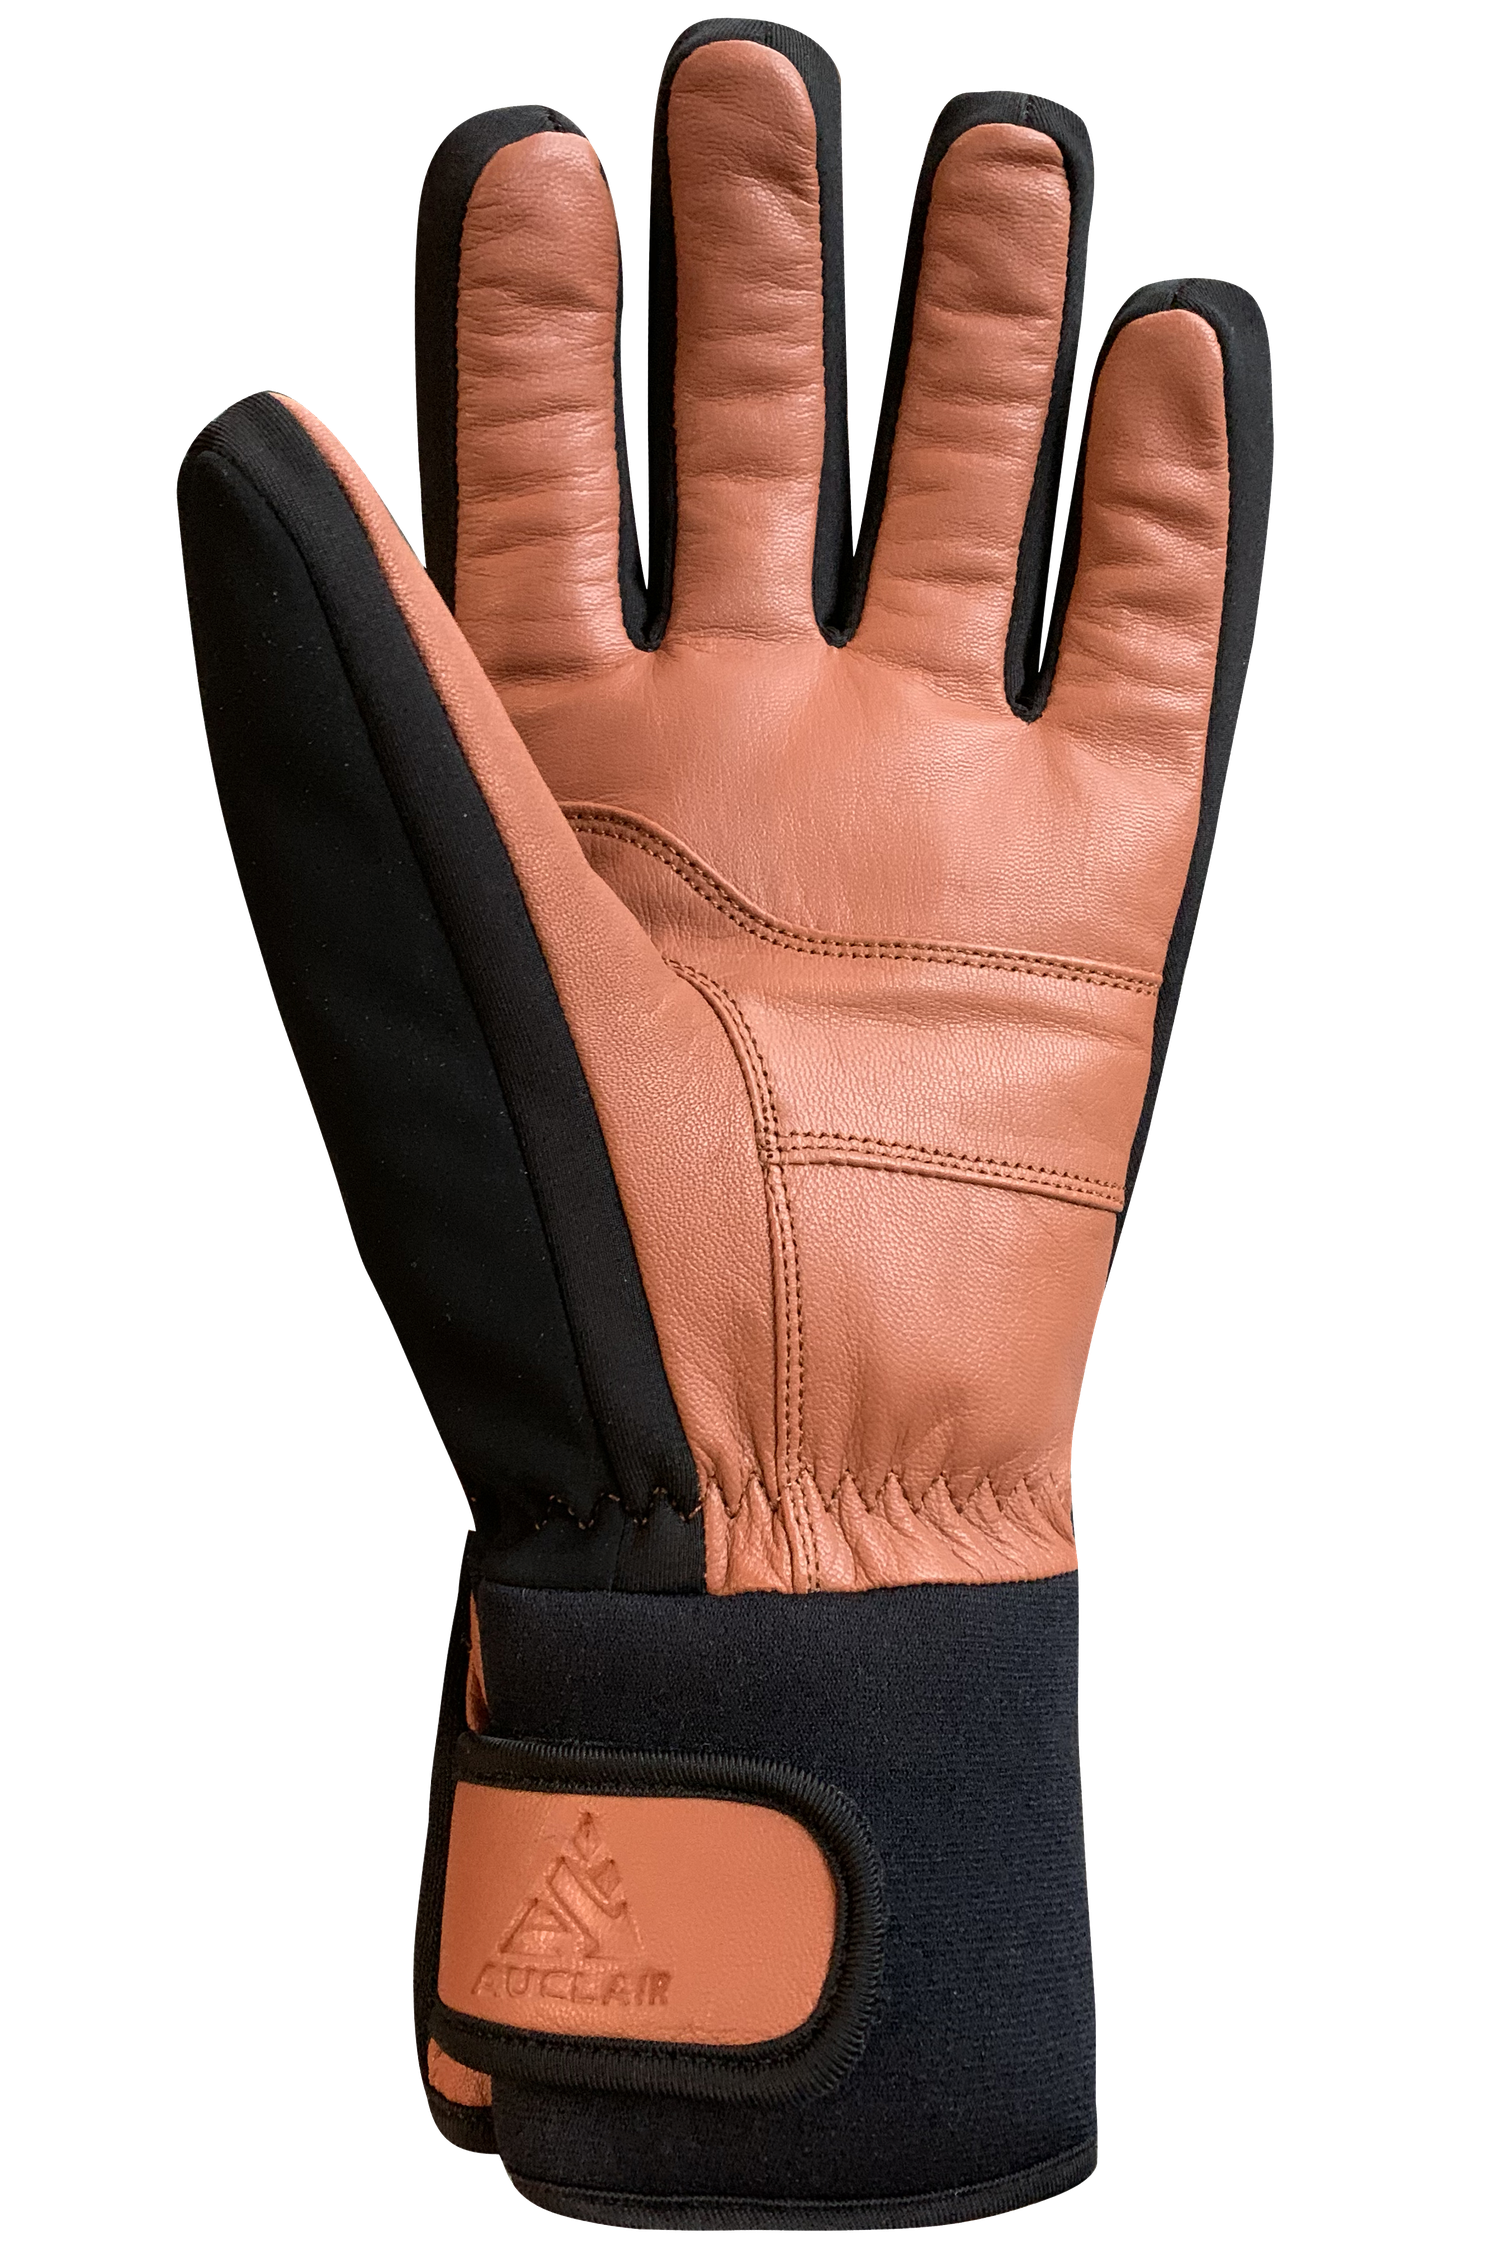 Trail Ridge Gloves - Adult. Black/Tan